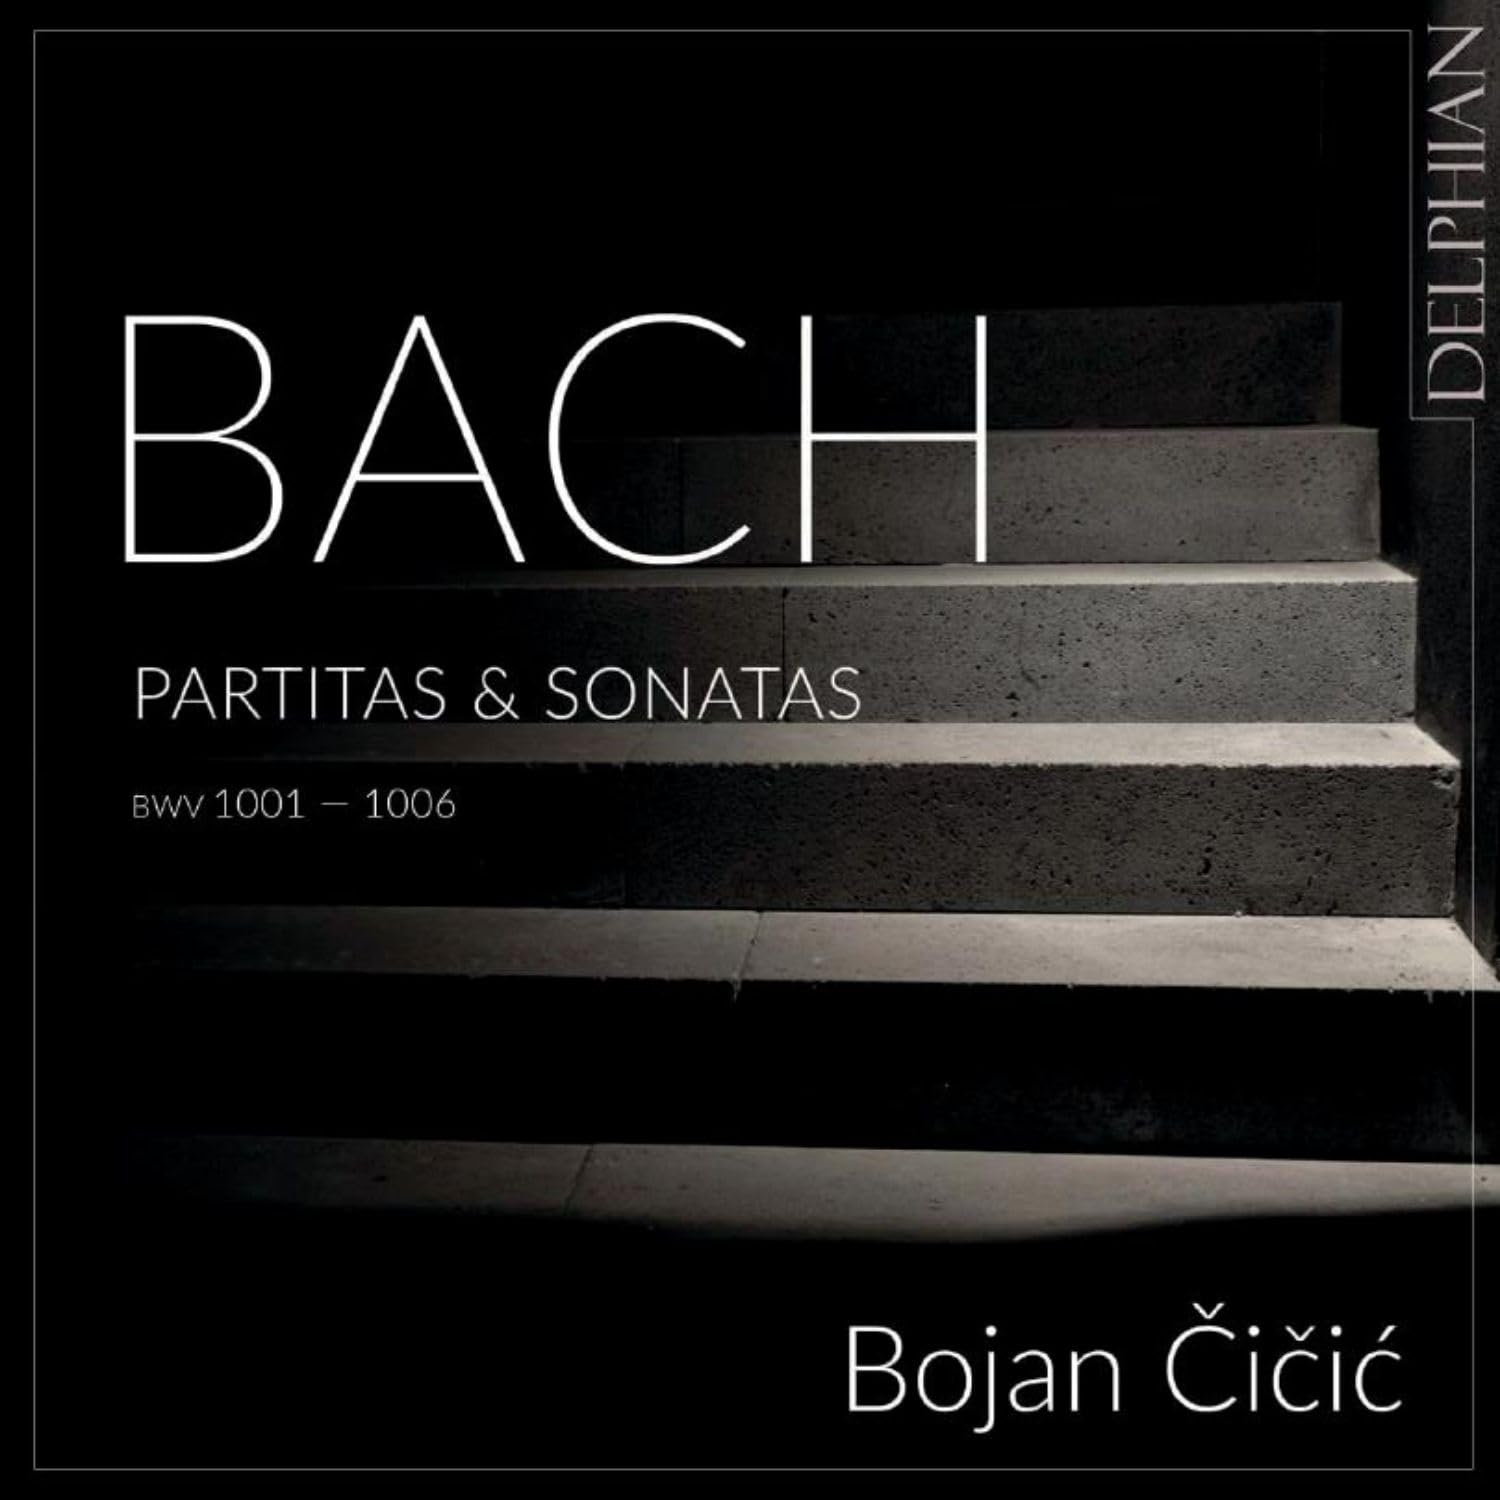 Audio Cd Bojan Cicic - Bach: Partitas & Sonatas Bwv 1001-1006 NUOVO SIGILLATO, EDIZIONE DEL 28/07/2023 SUBITO DISPONIBILE